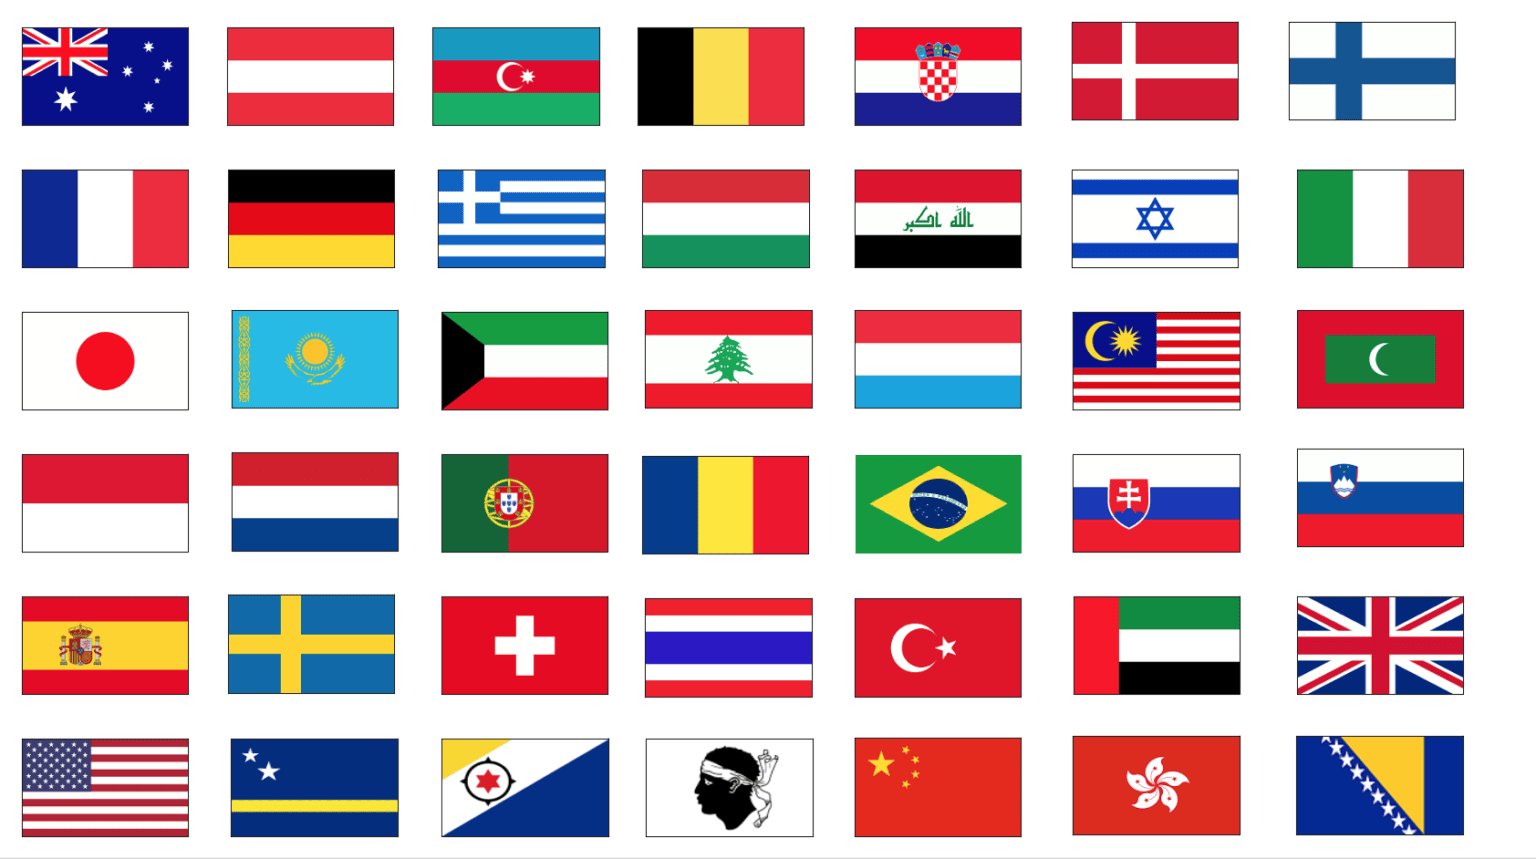 Une grille de différents drapeaux nationaux représentant différents pays du monde, affichés dans un tableau coloré.